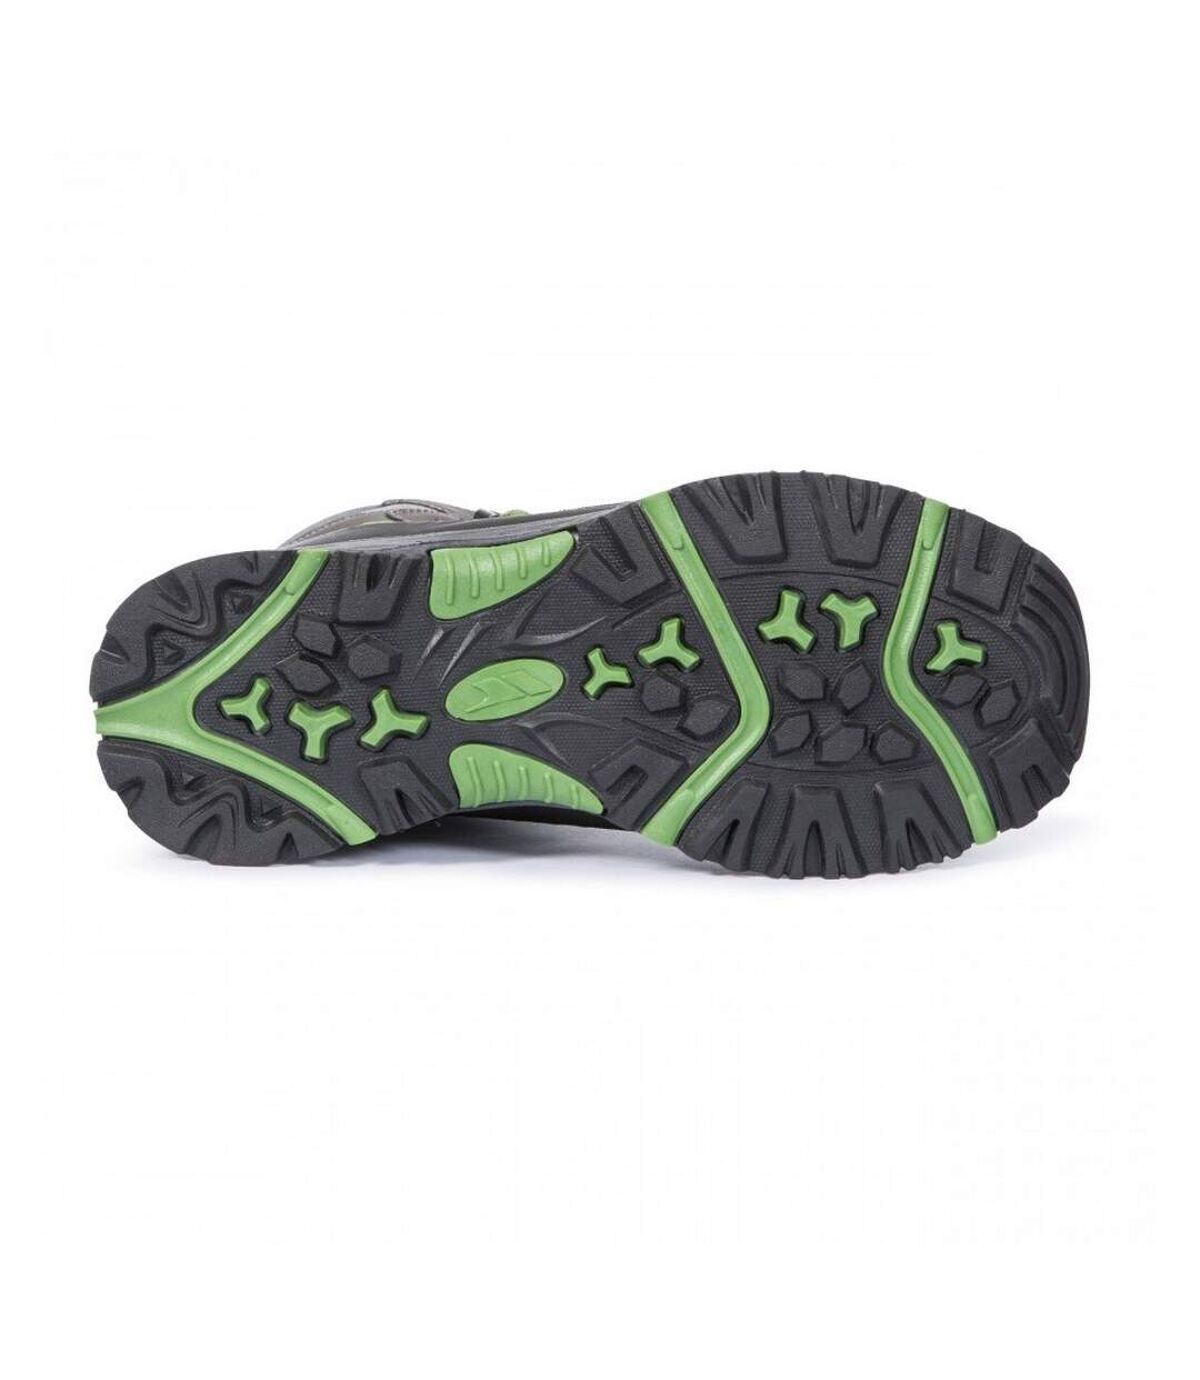 Trespass - Chaussures de randonnée GLEBE II - Enfant (Gris / vert) - UTTP4478